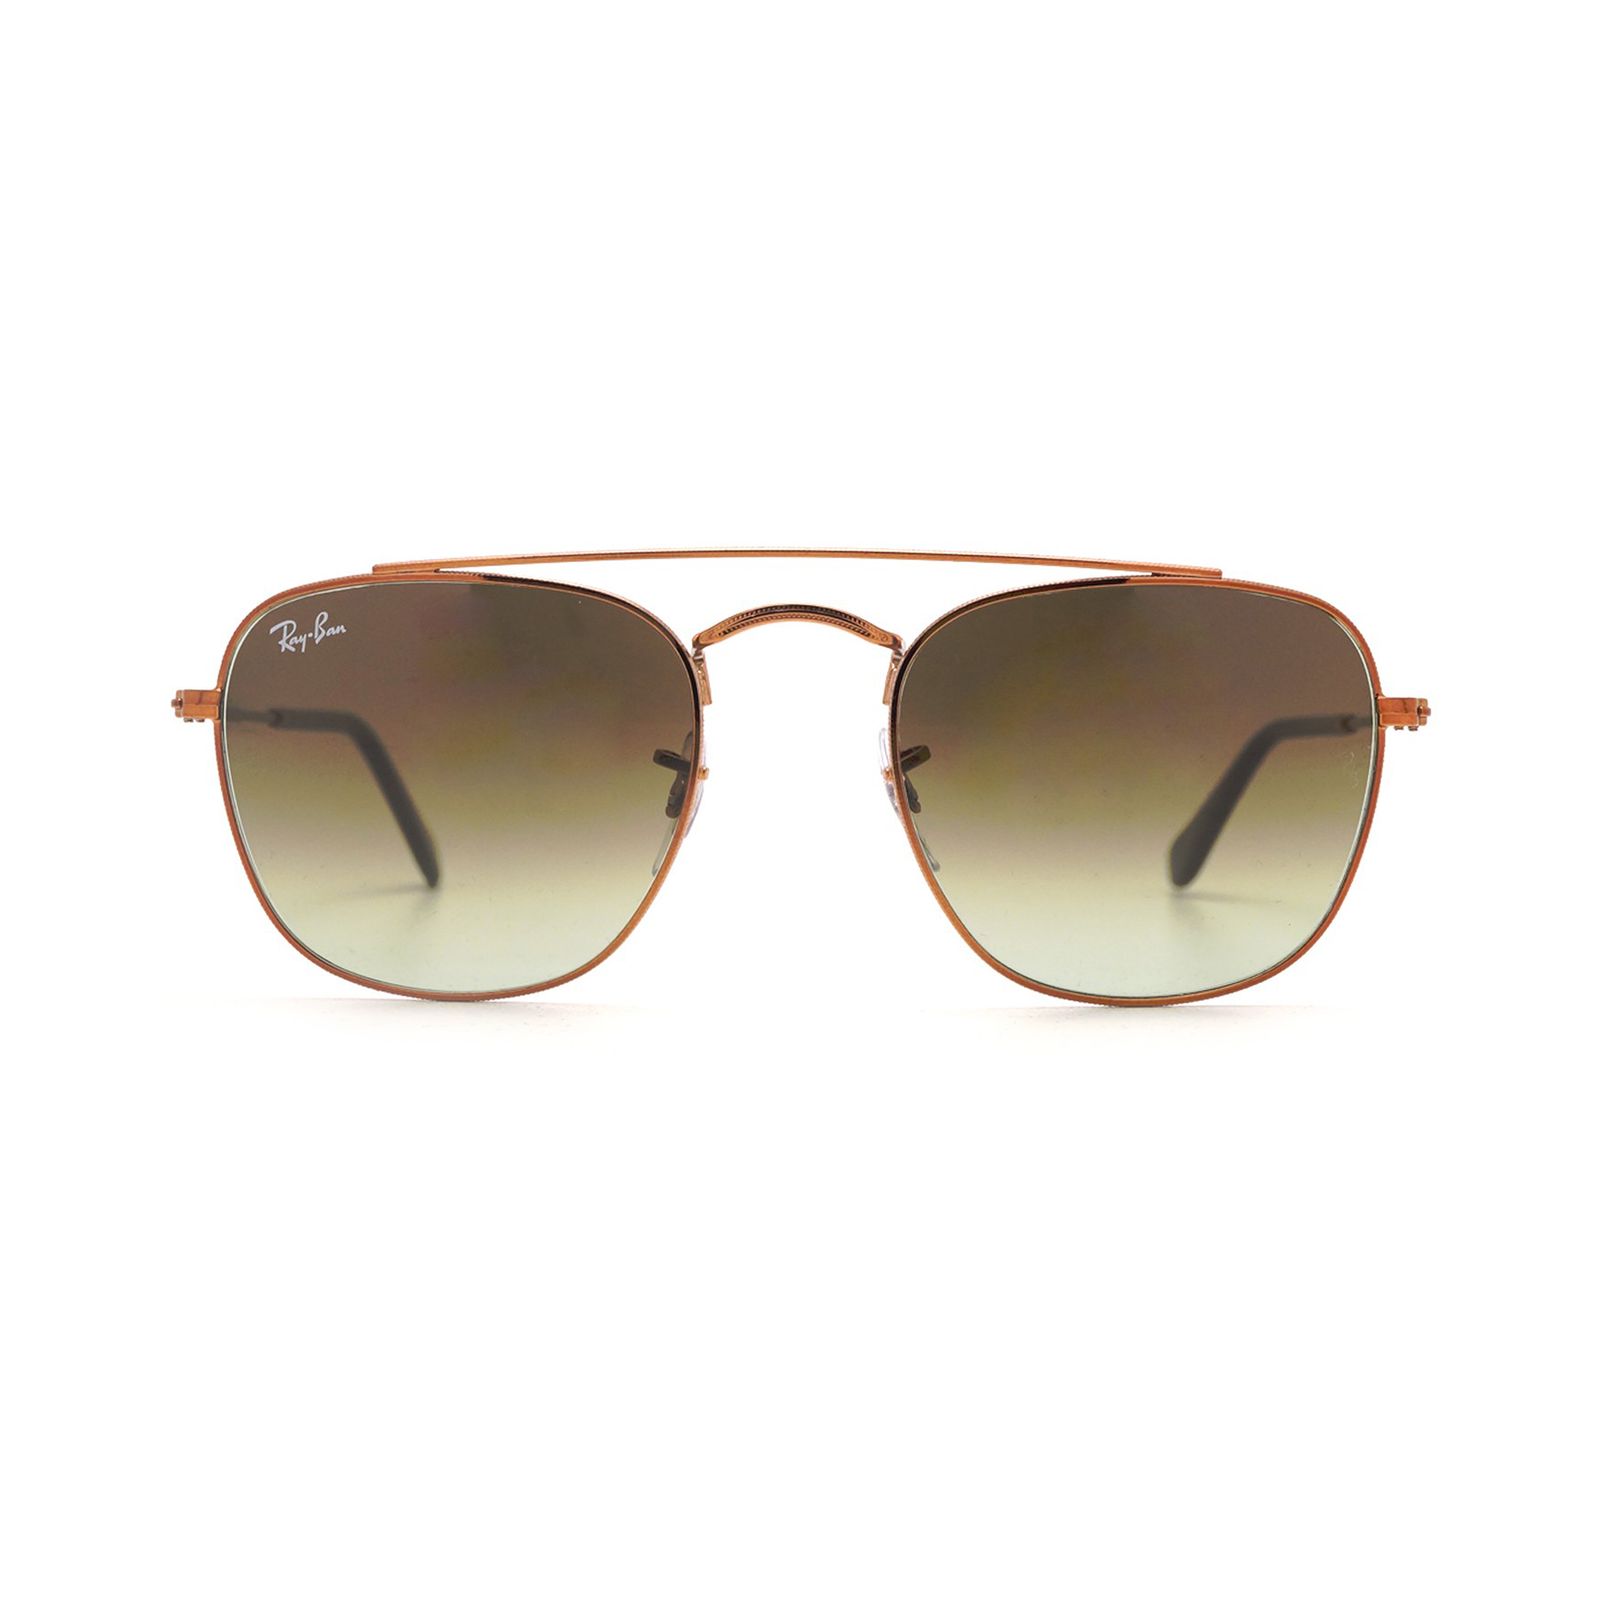 عینک آفتابی ری بن مدل 3557-9001/A5-51 - طلایی - 1